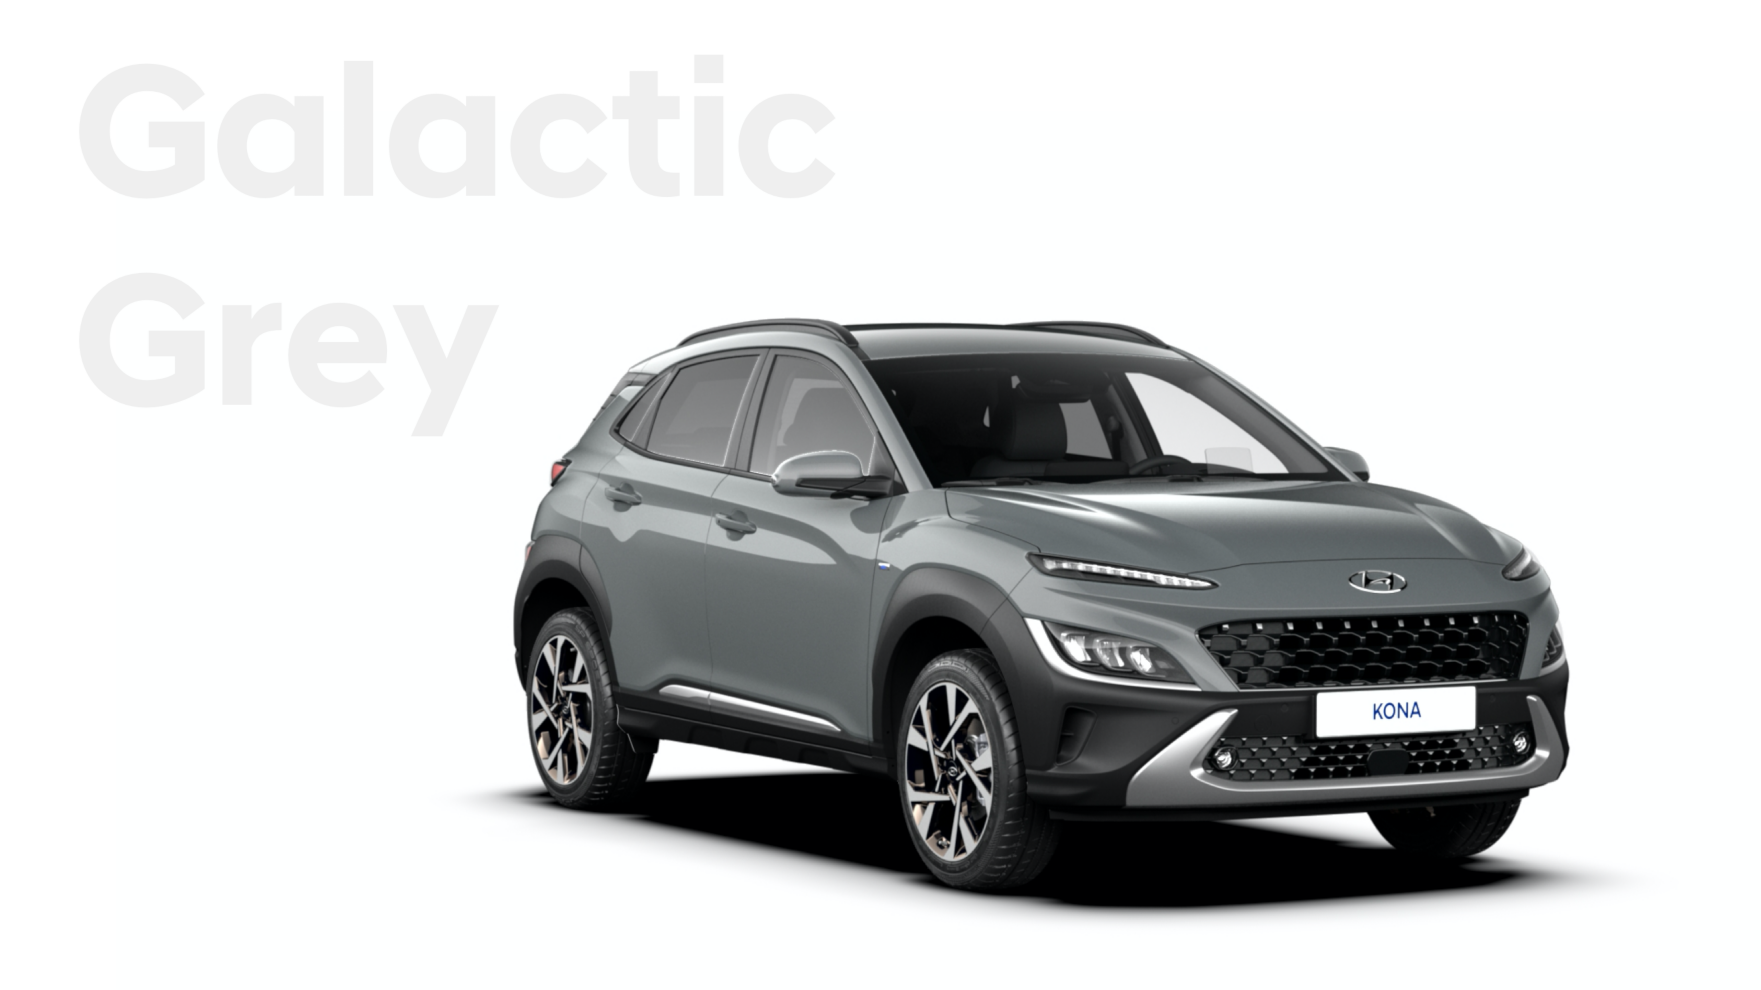 Nová velká paleta barevných variant nového modelu Hyundai Kona: barva Galactic Grey.